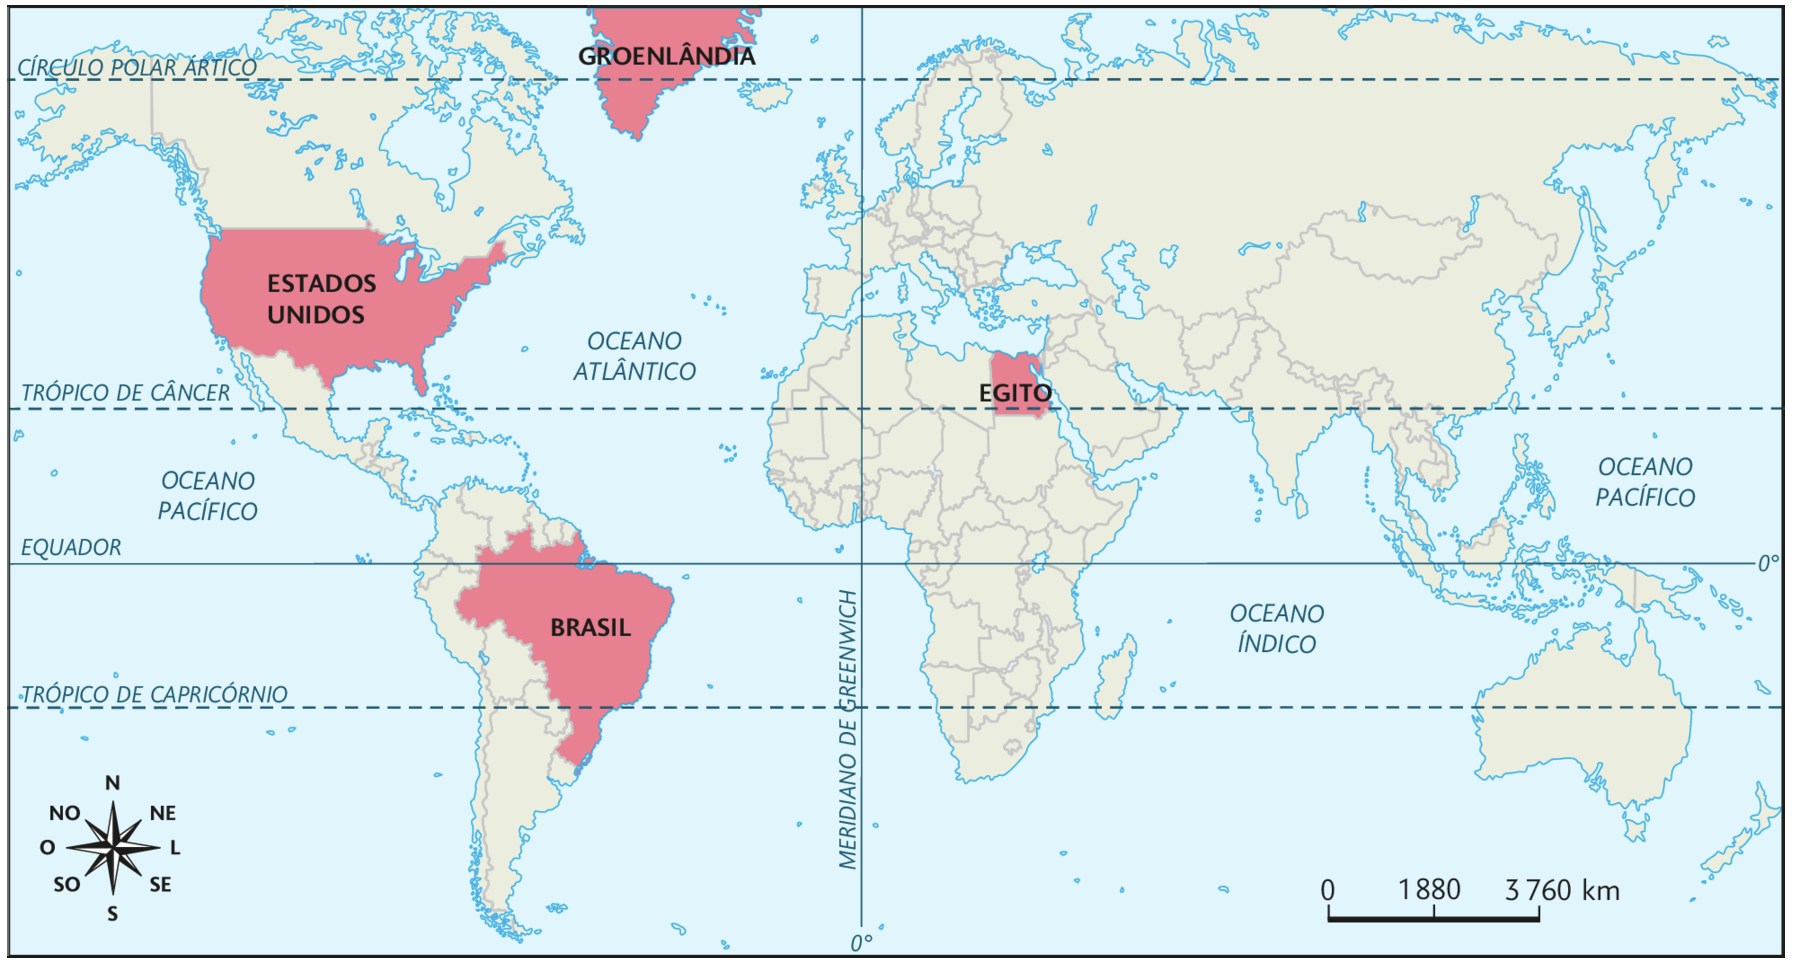 Mapa. Planisfério político (2018). Destacando Groenlândia, Estados Unidos, Brasil e Egito. No canto inferior esquerdo, a rosa dos ventos e à direita, a escala: 1880 quilômetros por centímetro.